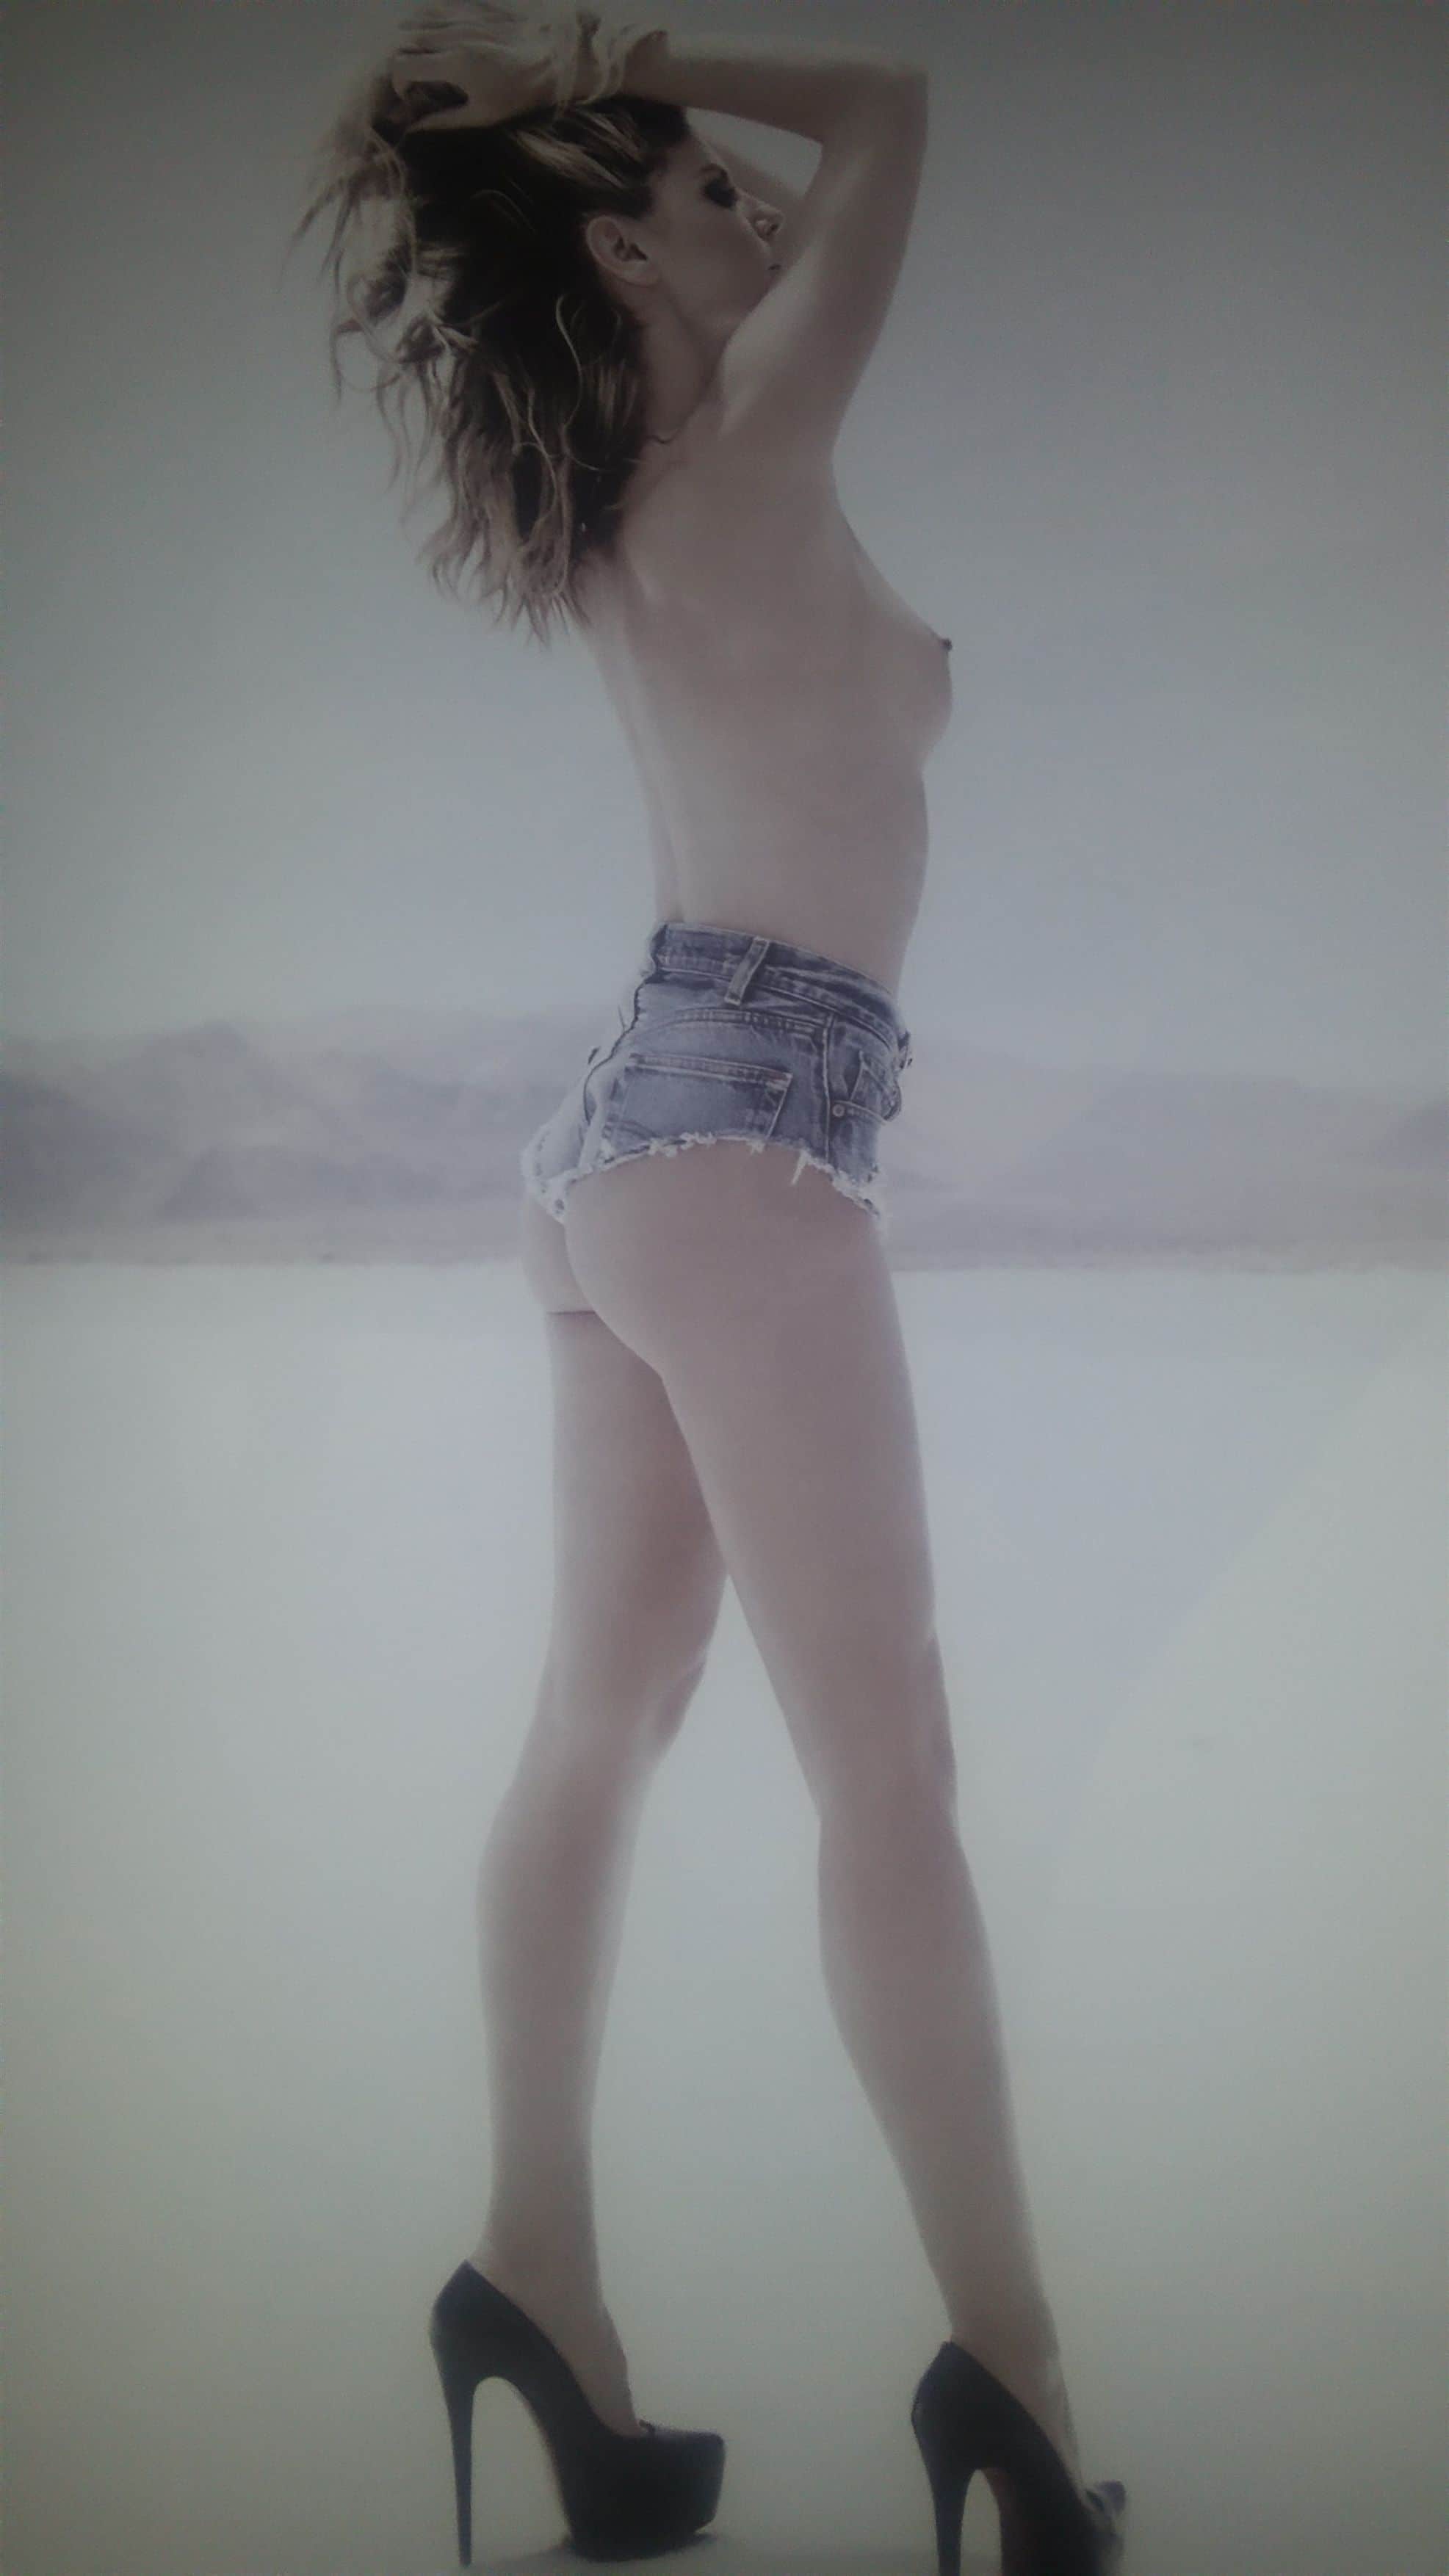 Heidi Klum topless